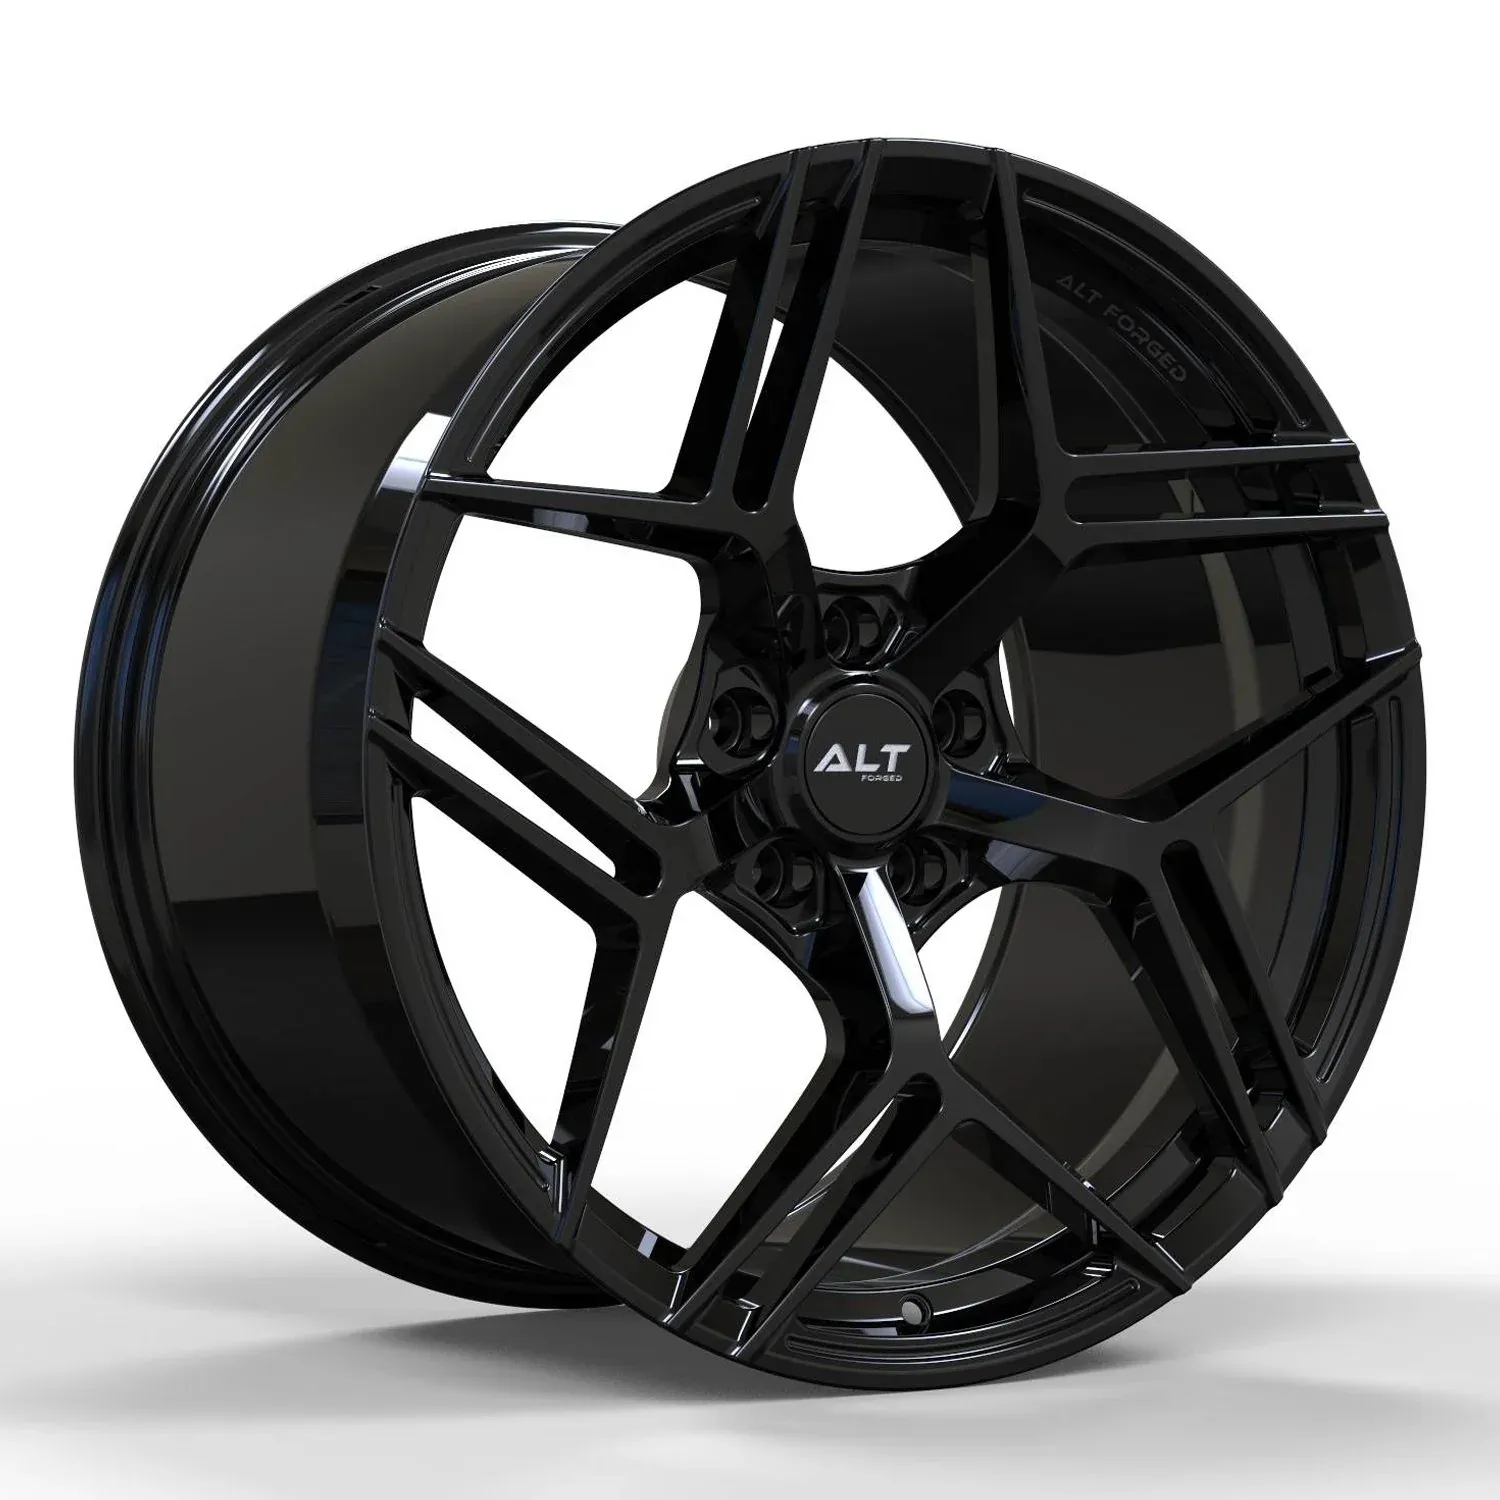 ALT12R Forged Gloss Black wheels for C6 Corvette Z06 / Grand Sport